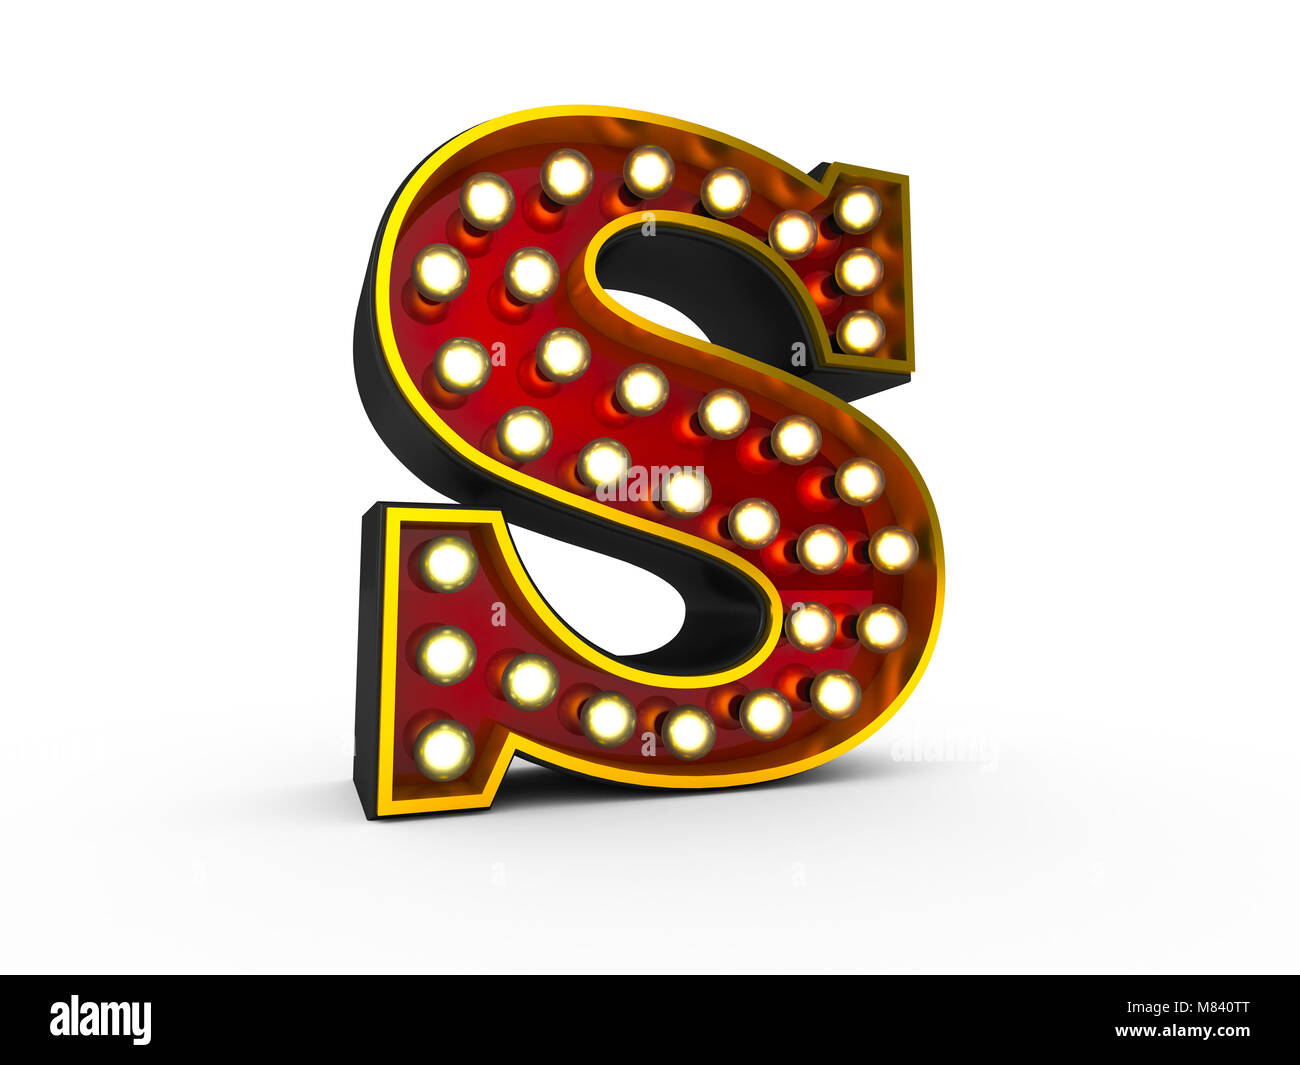 Alta qualità 3D illustrazione della lettera S in stile Broadway con lampadine è illuminante su sfondo bianco Foto Stock